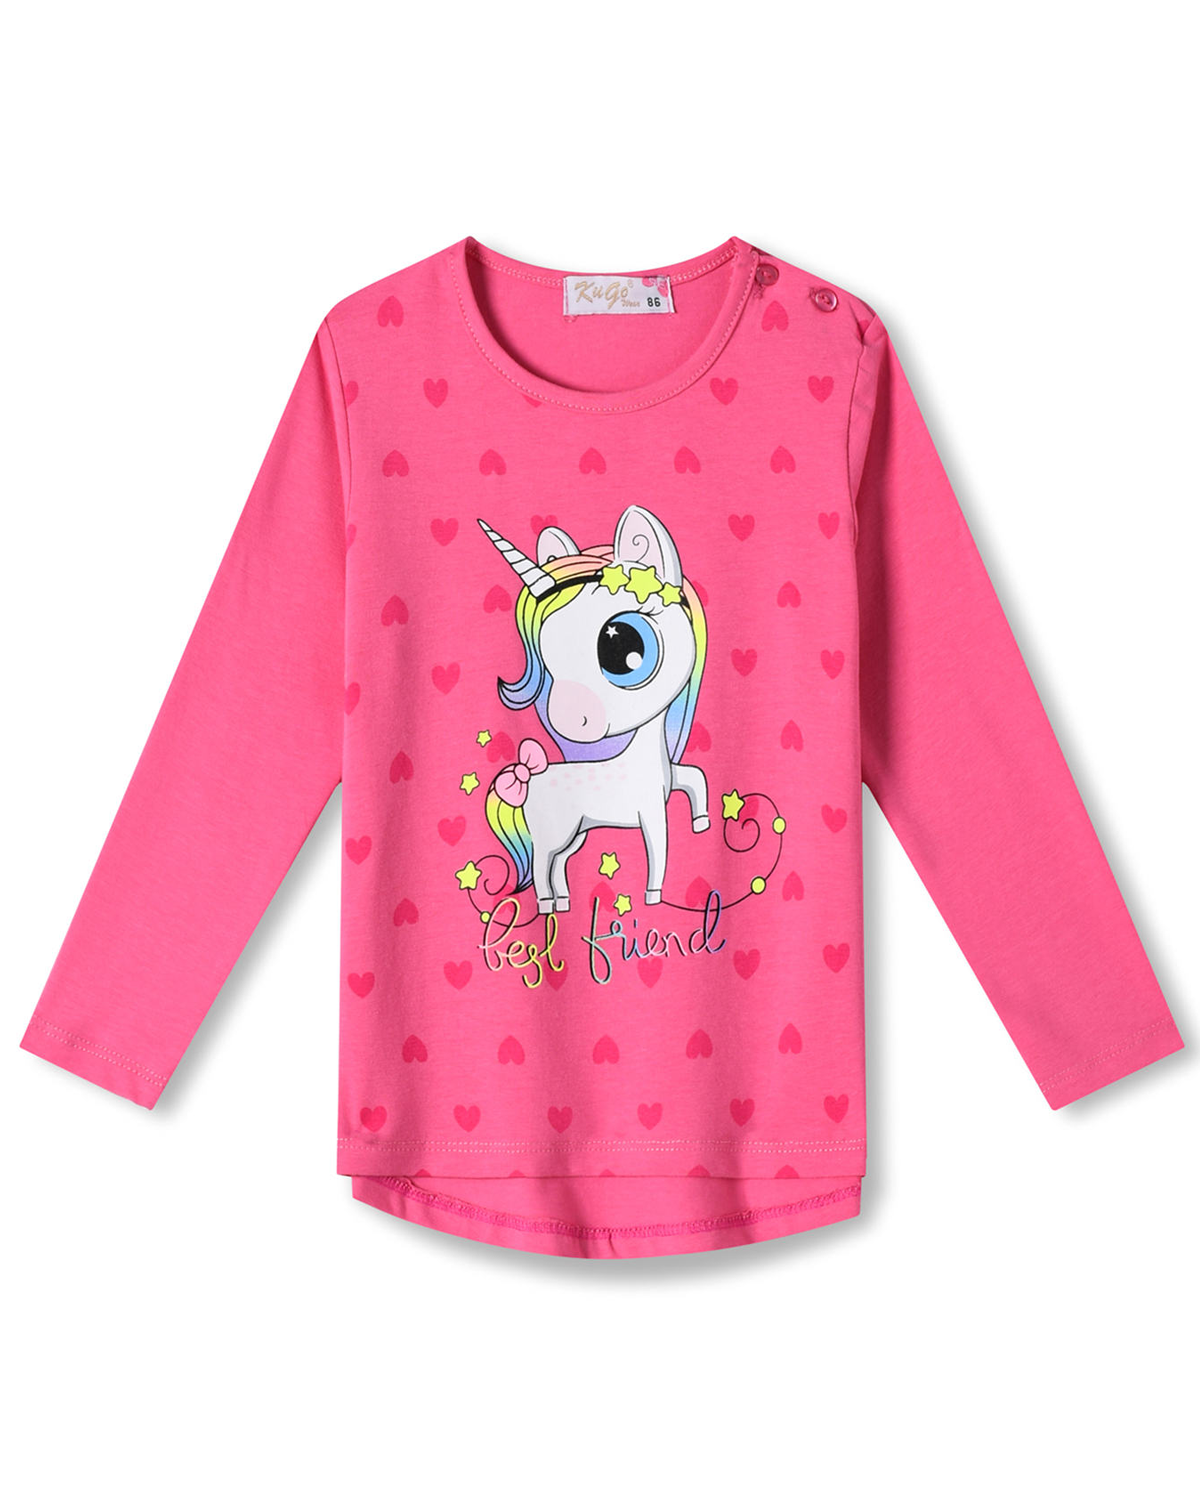 Dívčí tričko - KUGO HC0746, sytě růžová Barva: Růžová tmavší, Velikost: 98